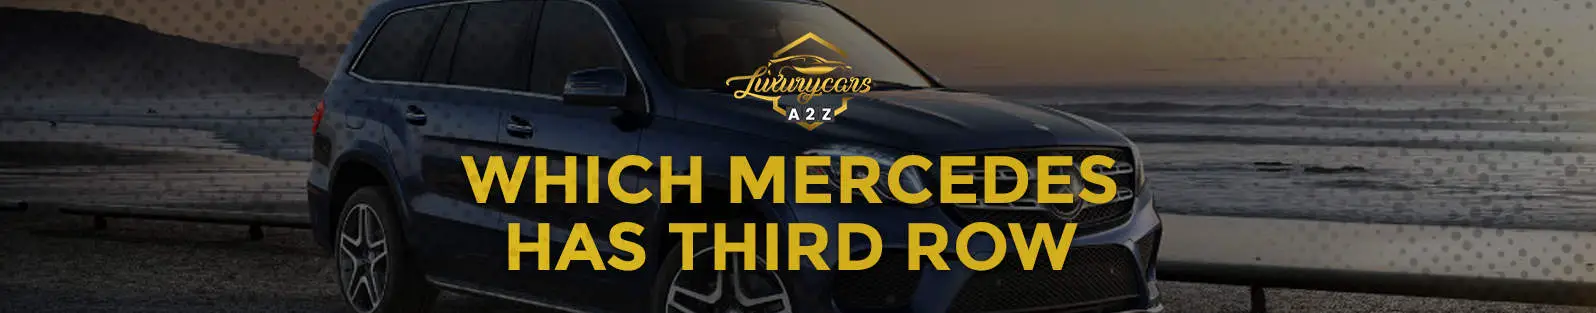 Quelle Mercedes possède une troisième rangée ?